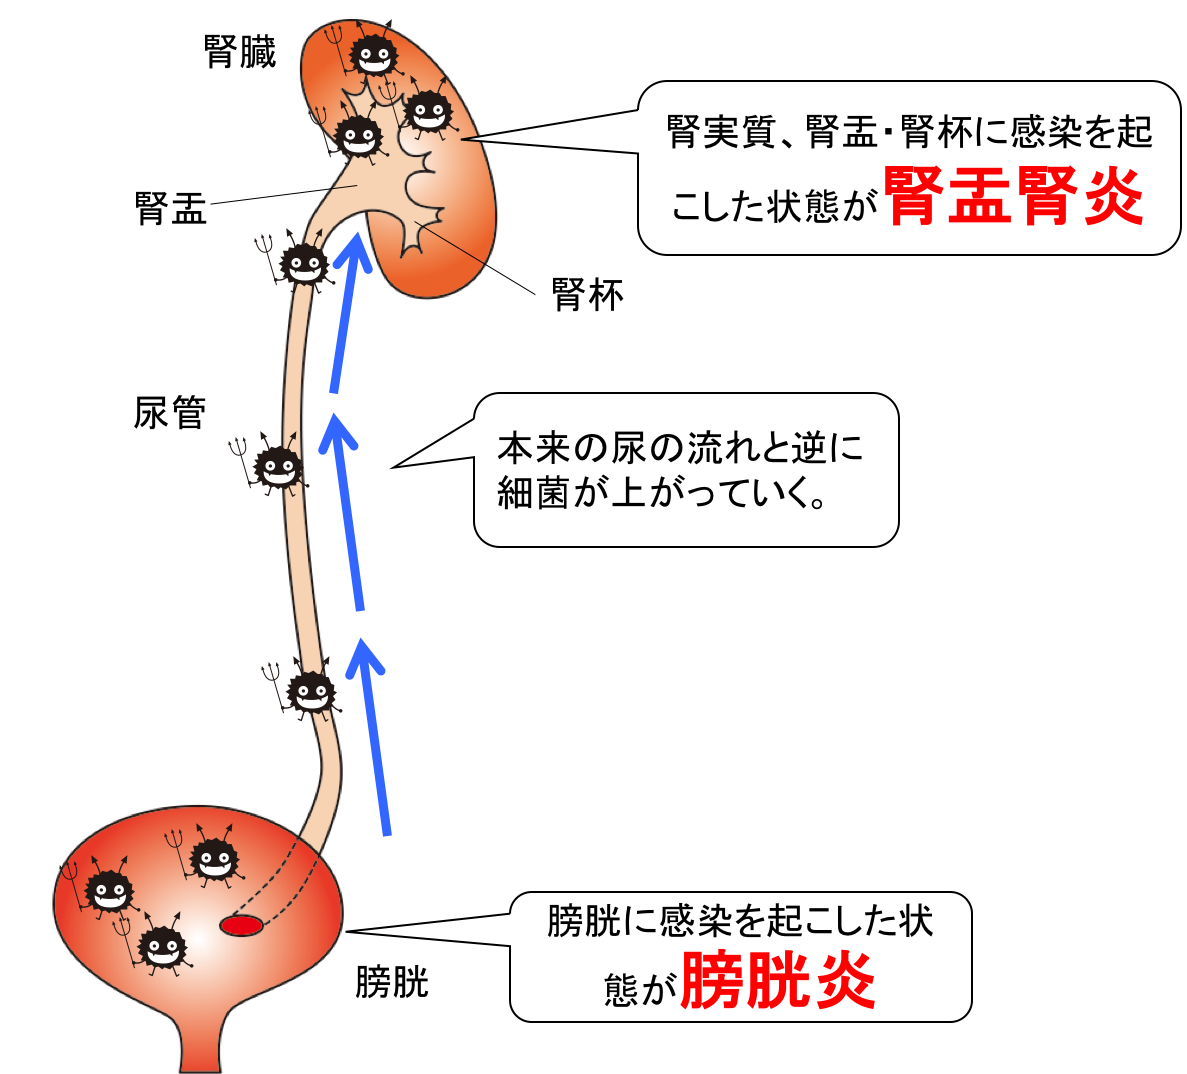 腎盂腎炎及び膀胱炎の図、イラスト